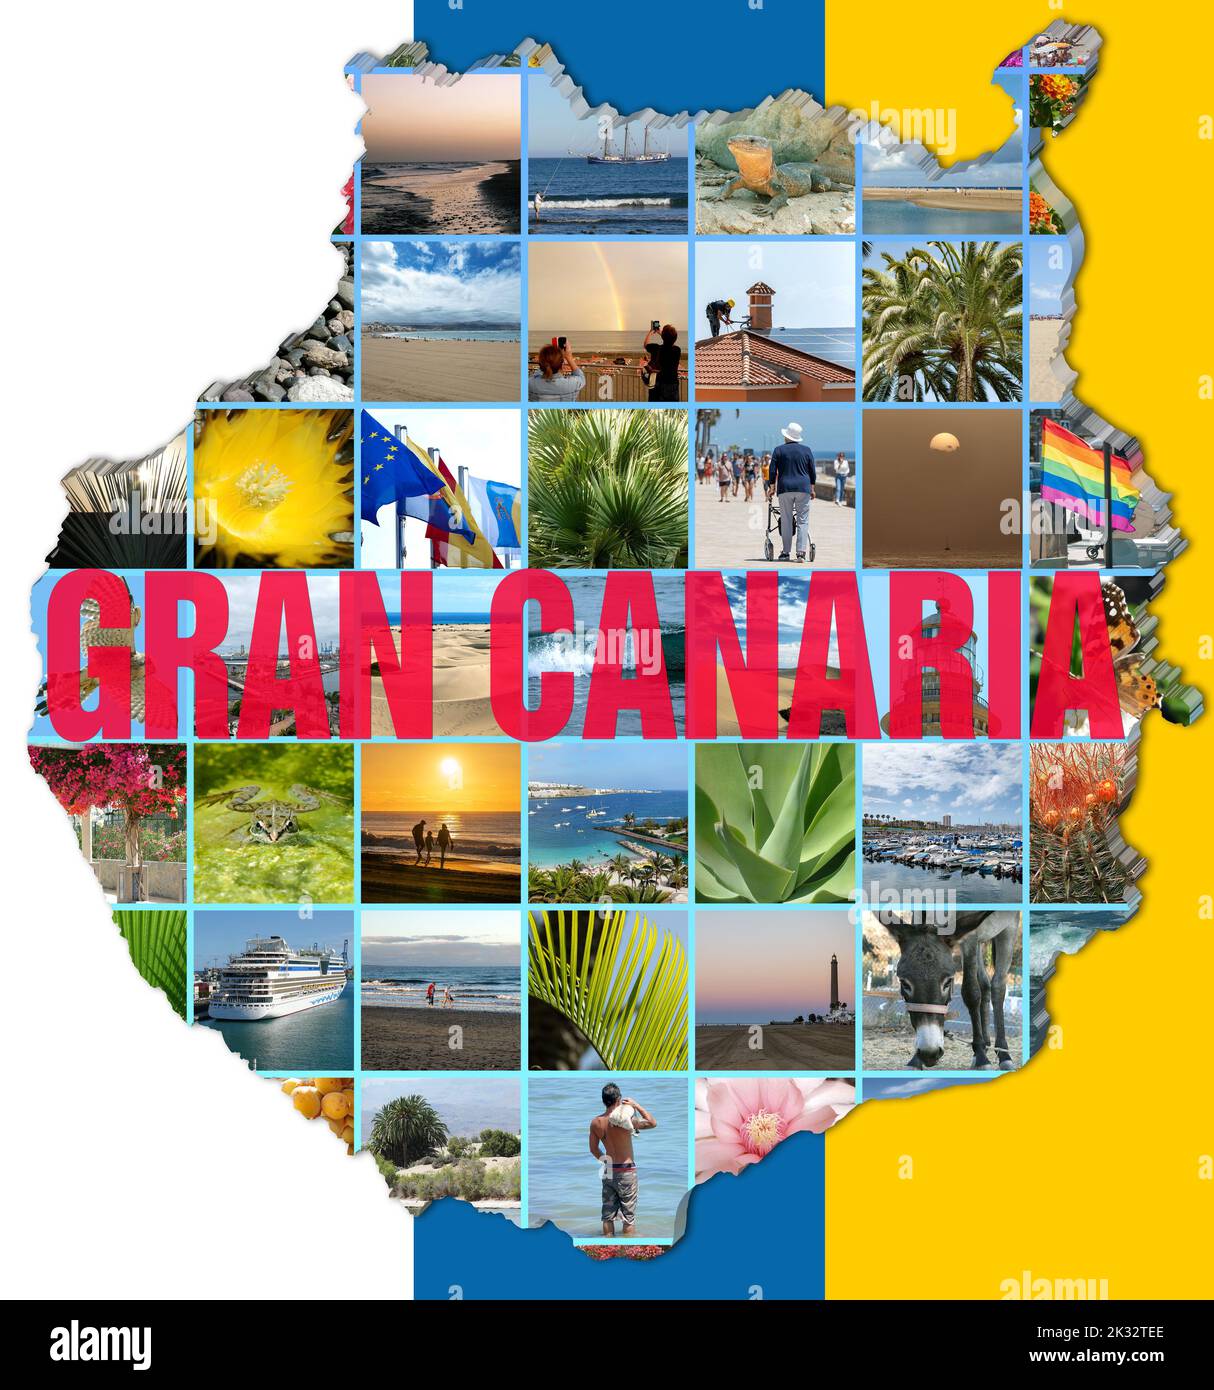 Collage de fotos de Gran Canaria en vista de mapa de Gran Canaria, con los colores de la bandera canaria como fondo. Con texto 'Gran Canaria'. Foto de stock